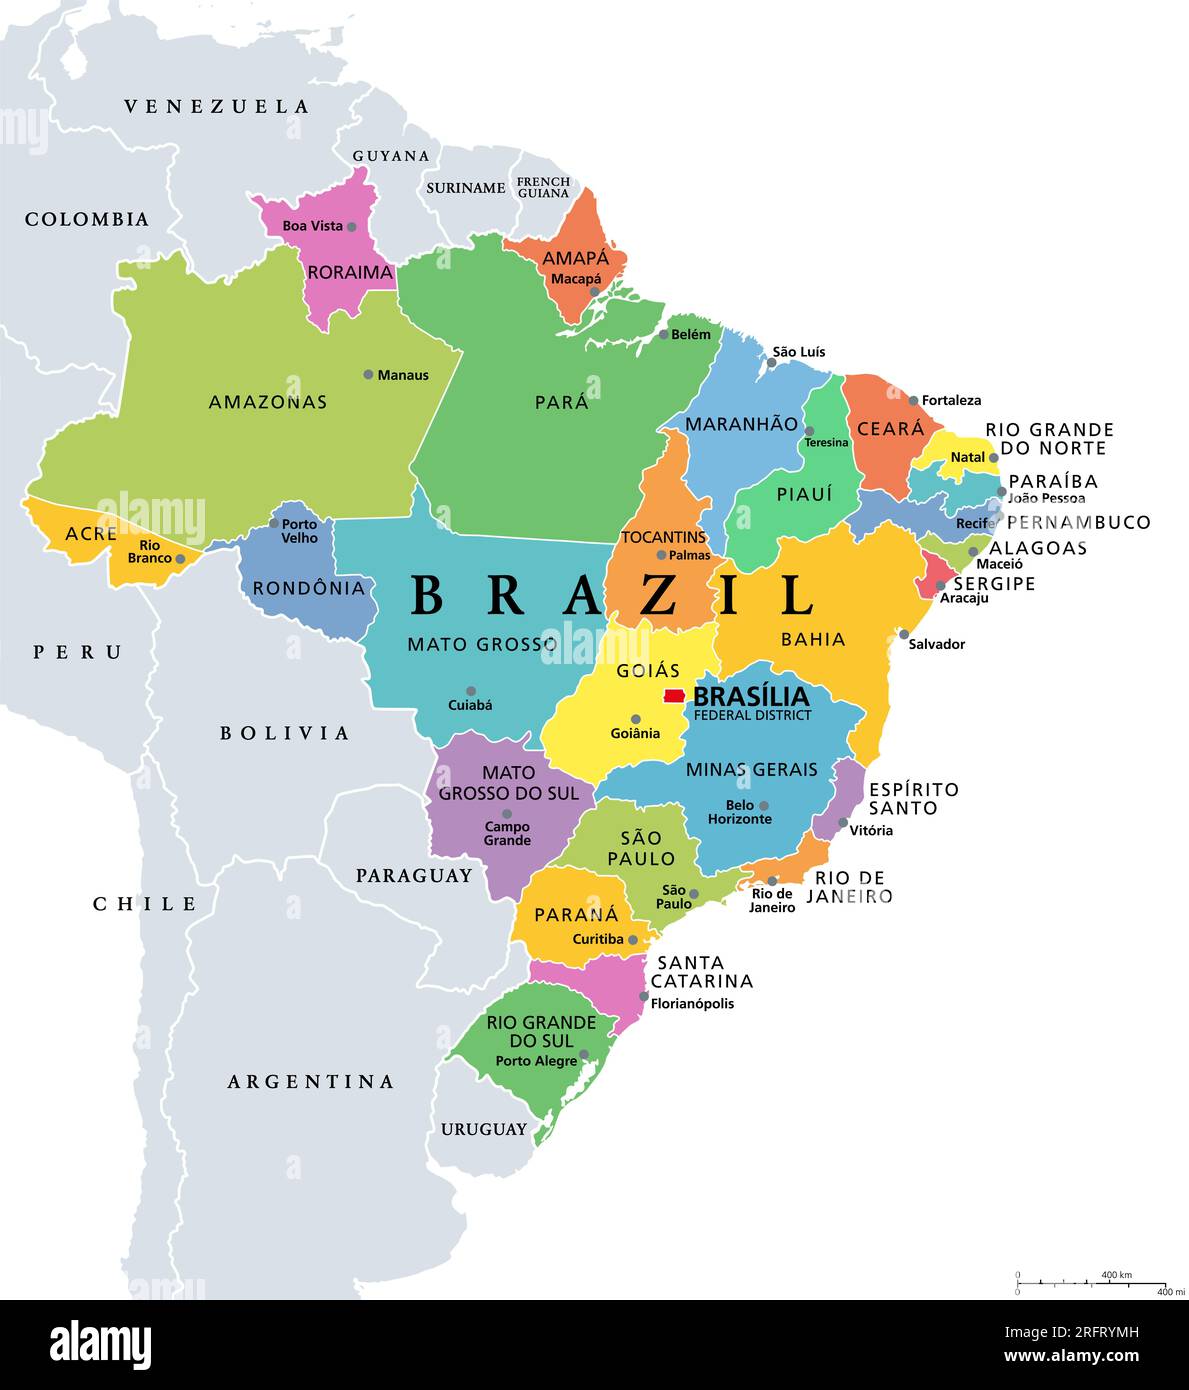 Stati del Brasile, mappa politica. Unità federative colorate, con bordi e maiuscole. Enti subnazionali che formano la Repubblica federativa del Brasile. Foto Stock